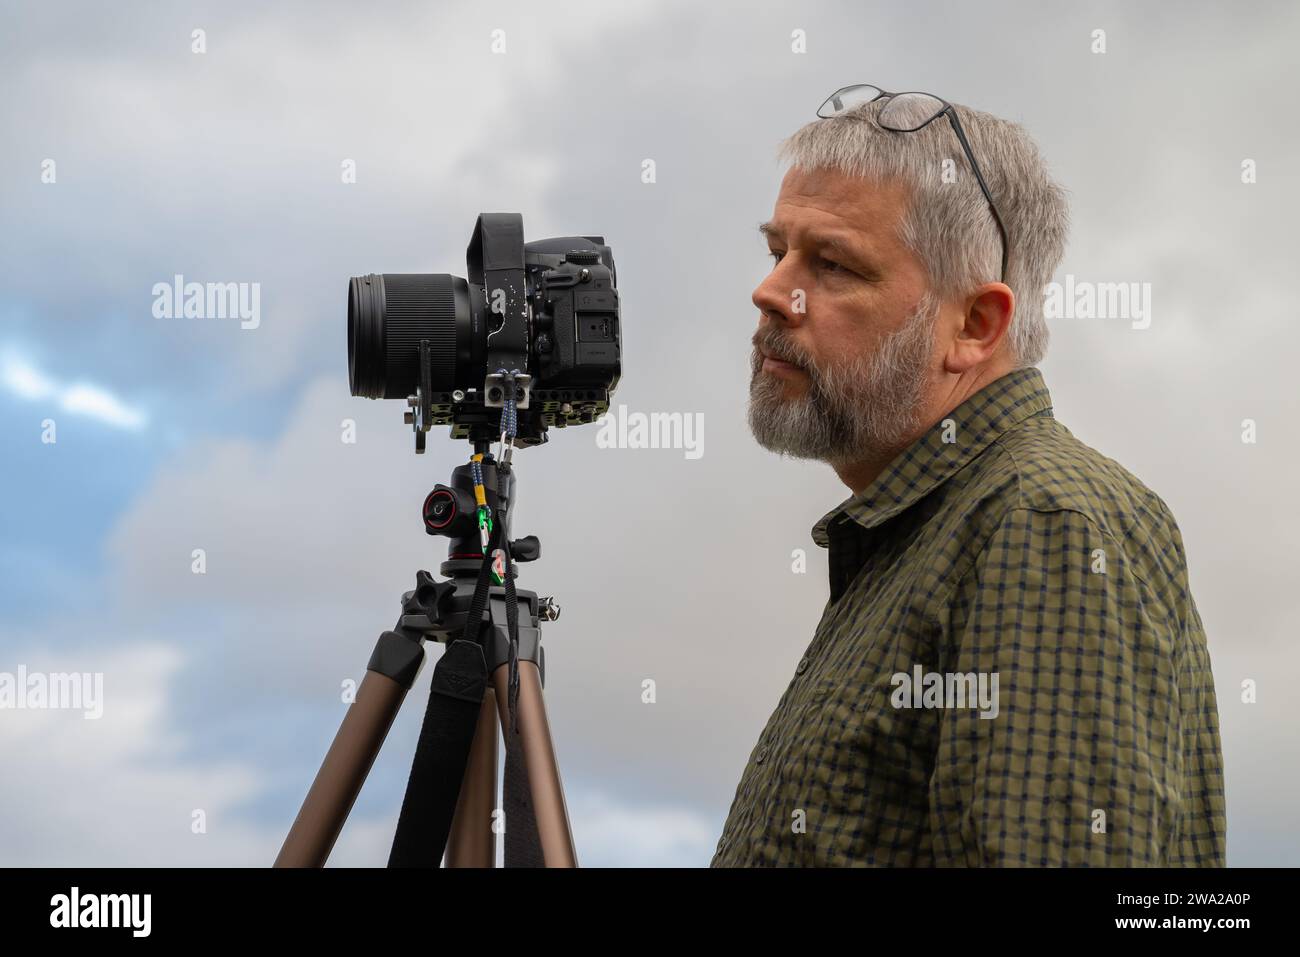 Photographe au travail, cheveux gris et barbe complète, 56 ans, regardant devant l'appareil vers le sujet, lunettes poussées, chemise à carreaux vert olive, Banque D'Images